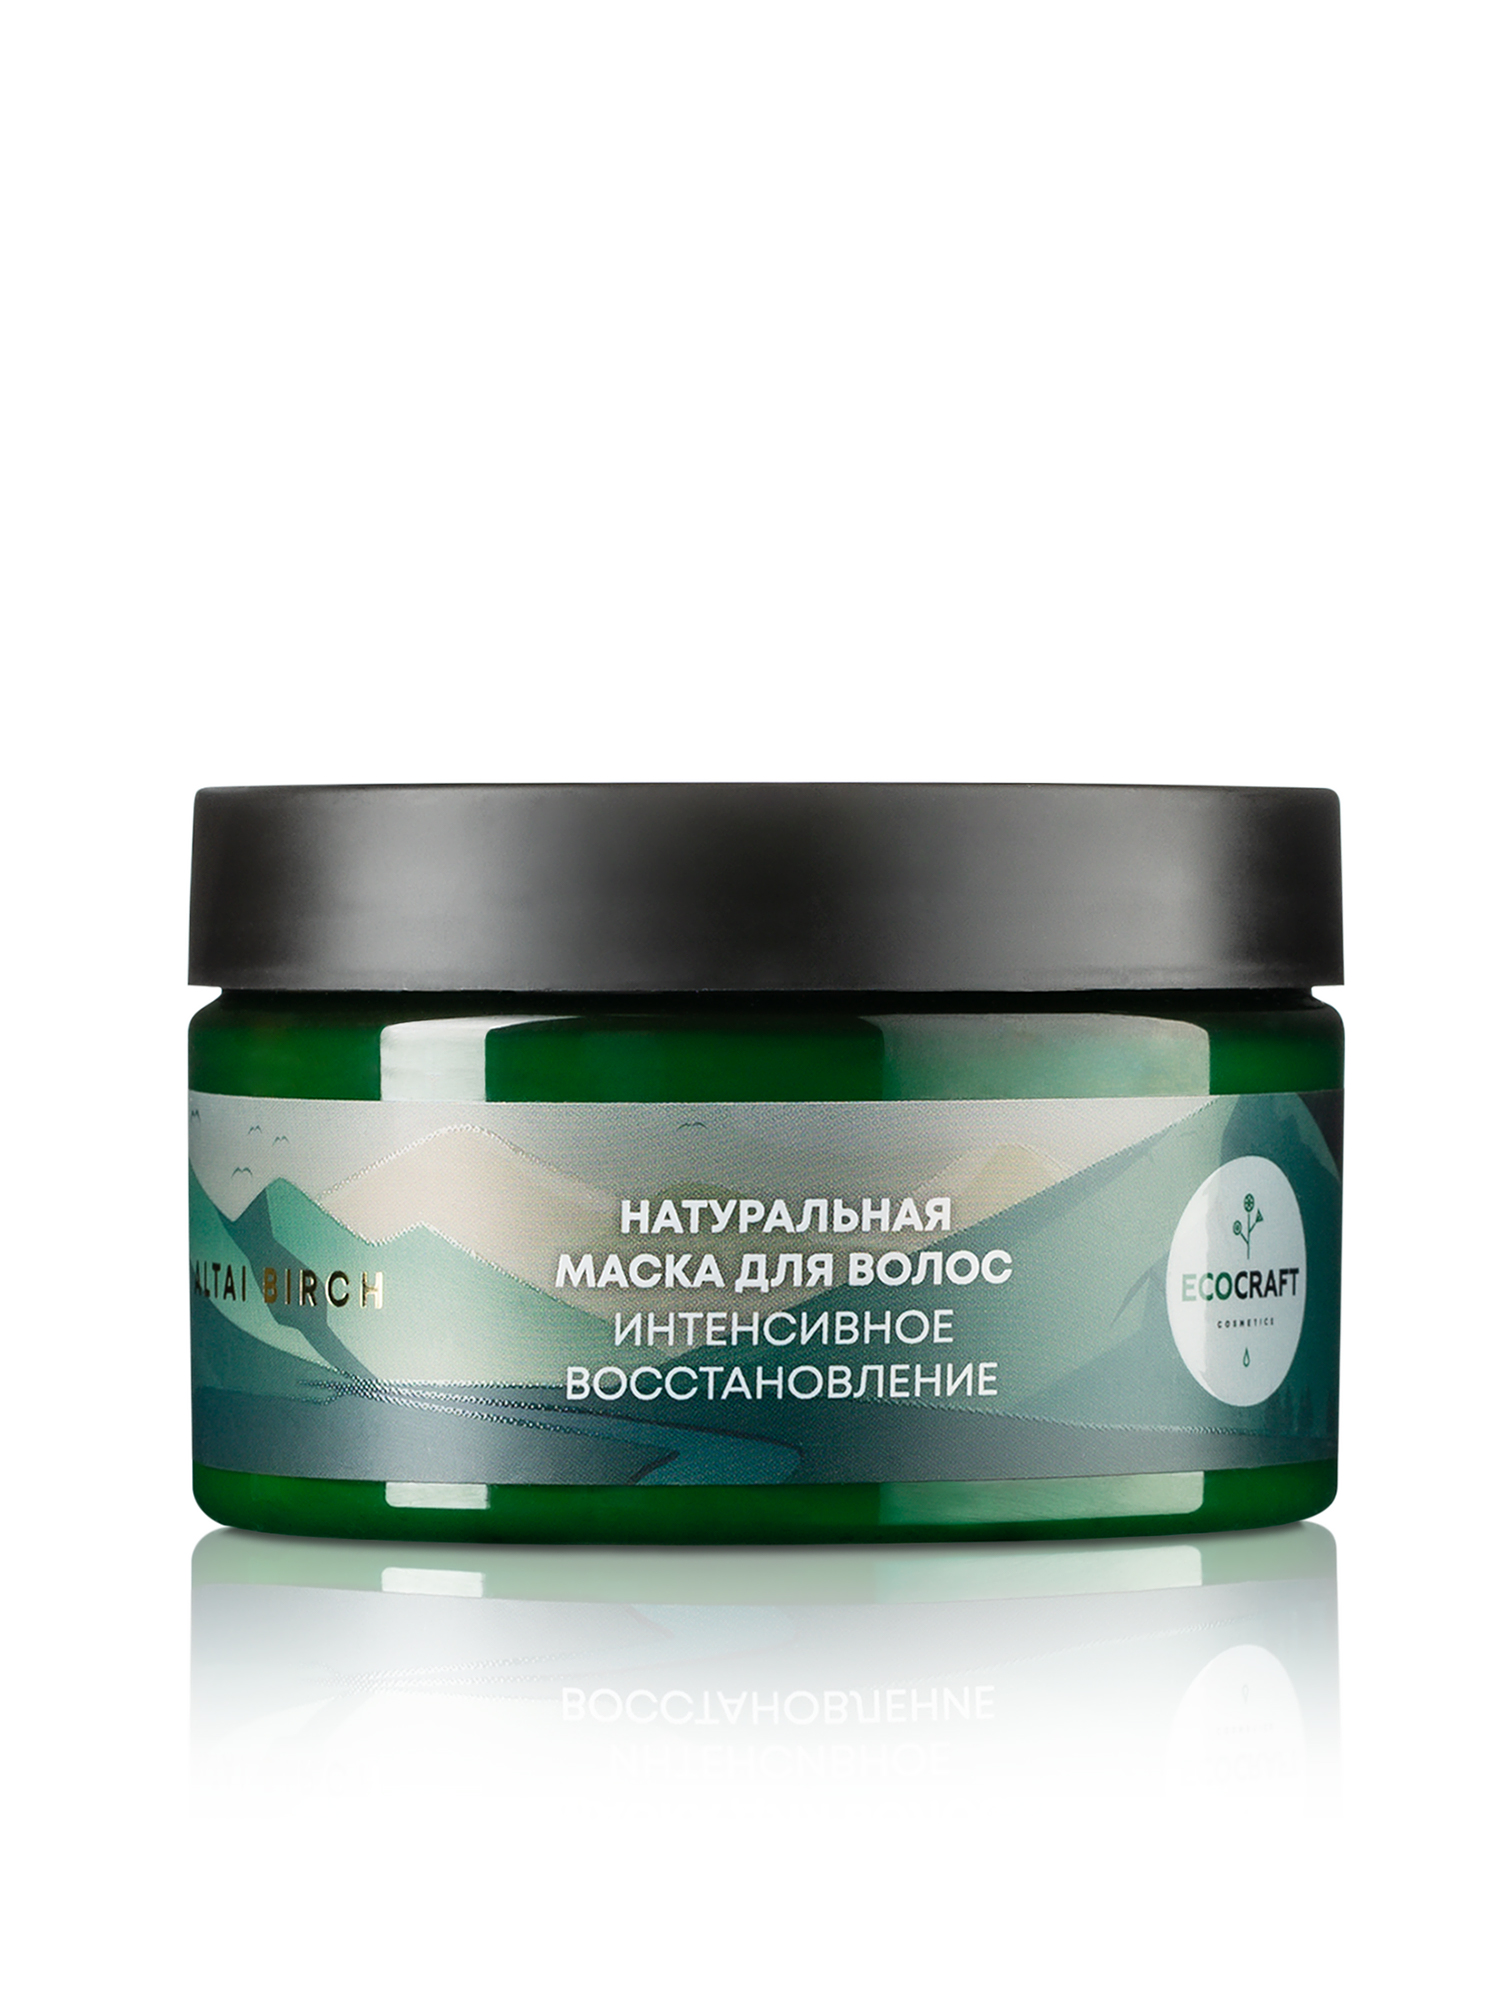 Маска для волос EcoCraft Altai Birch Интенсивное восстановление Алтайская береза 250мл - в интернет-магазине tut-beauty.by